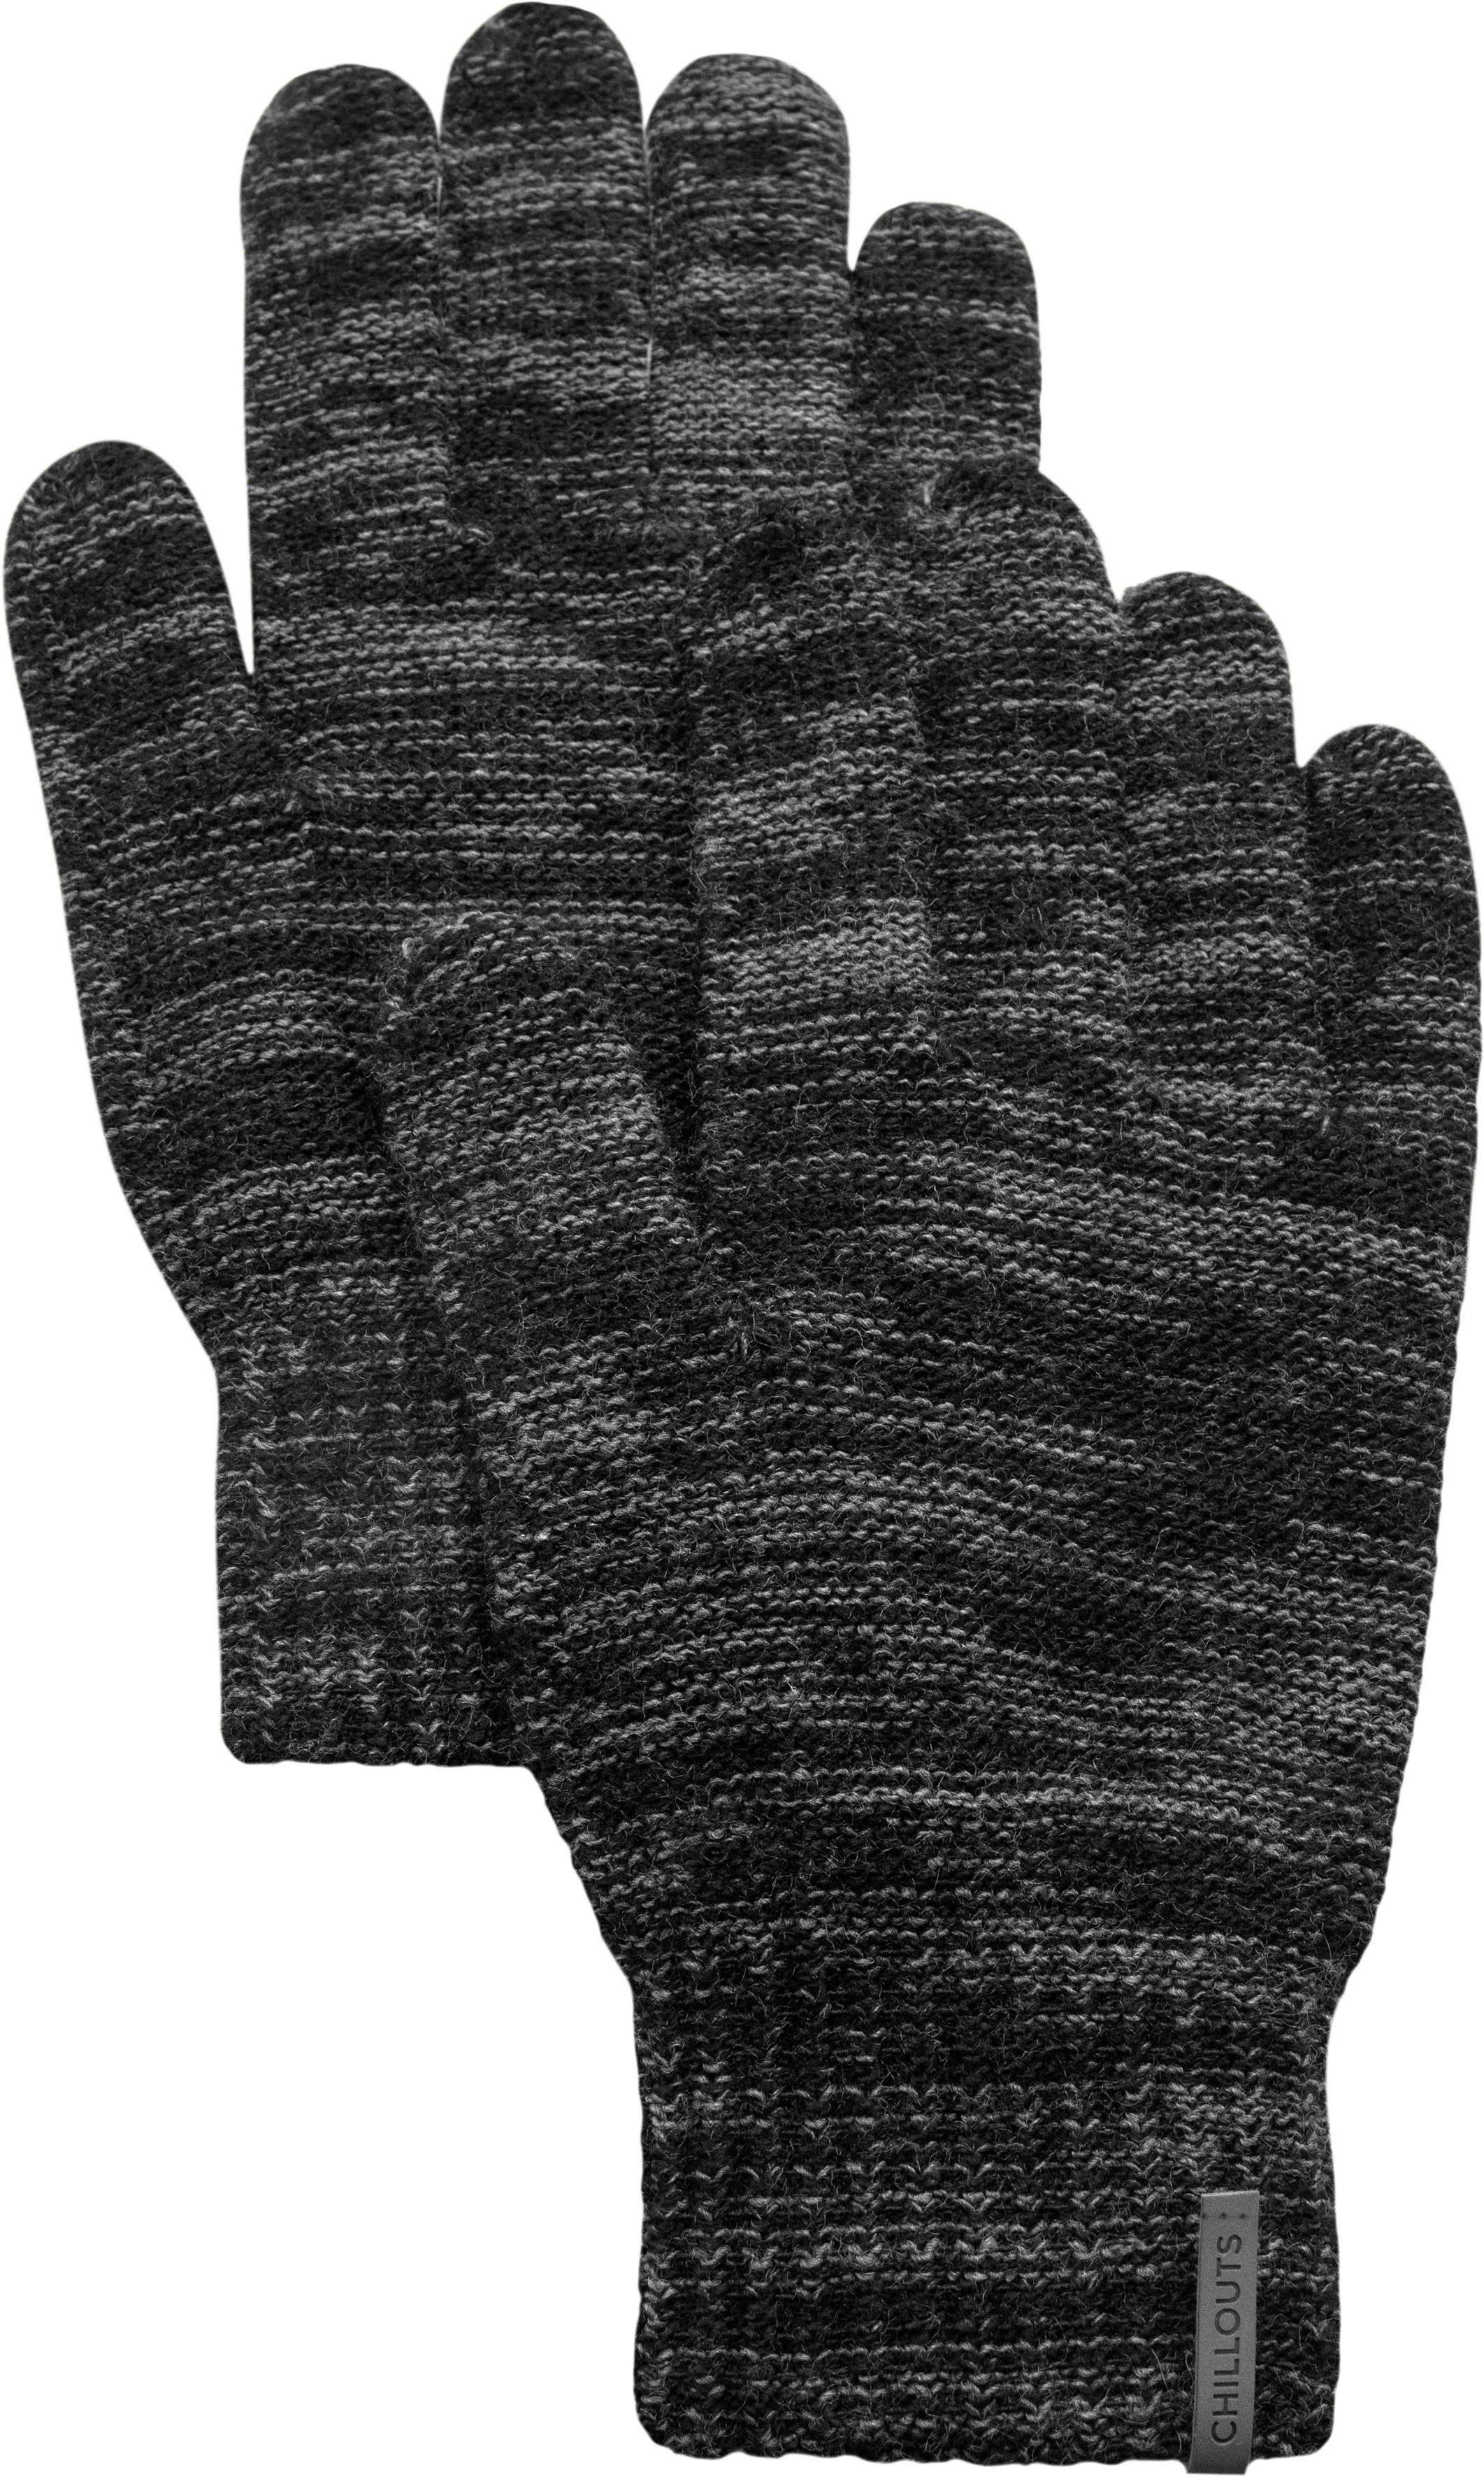 Strickhandschuhe Glove Ben chillouts